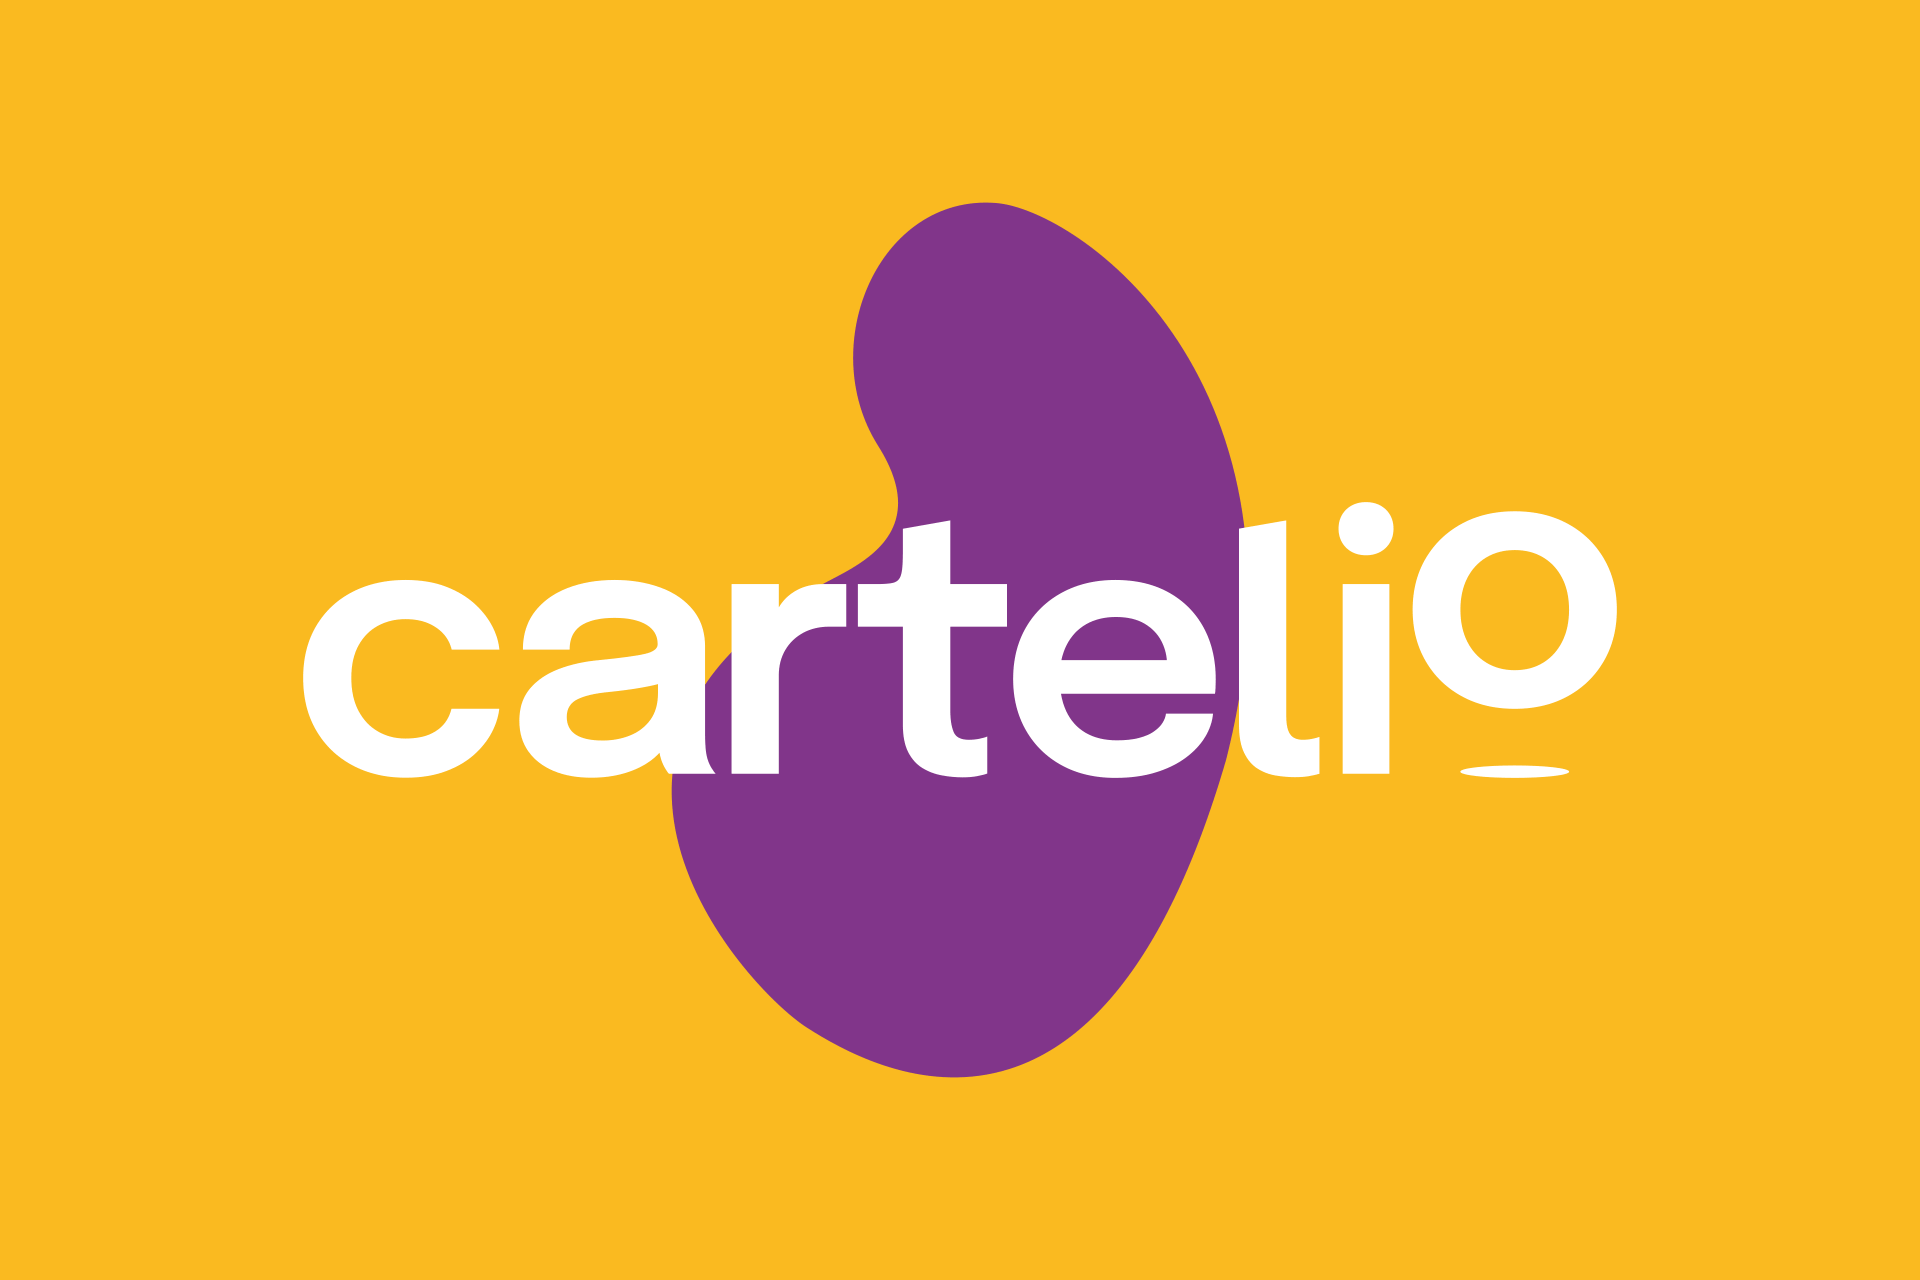 Cartelio_GIF_01